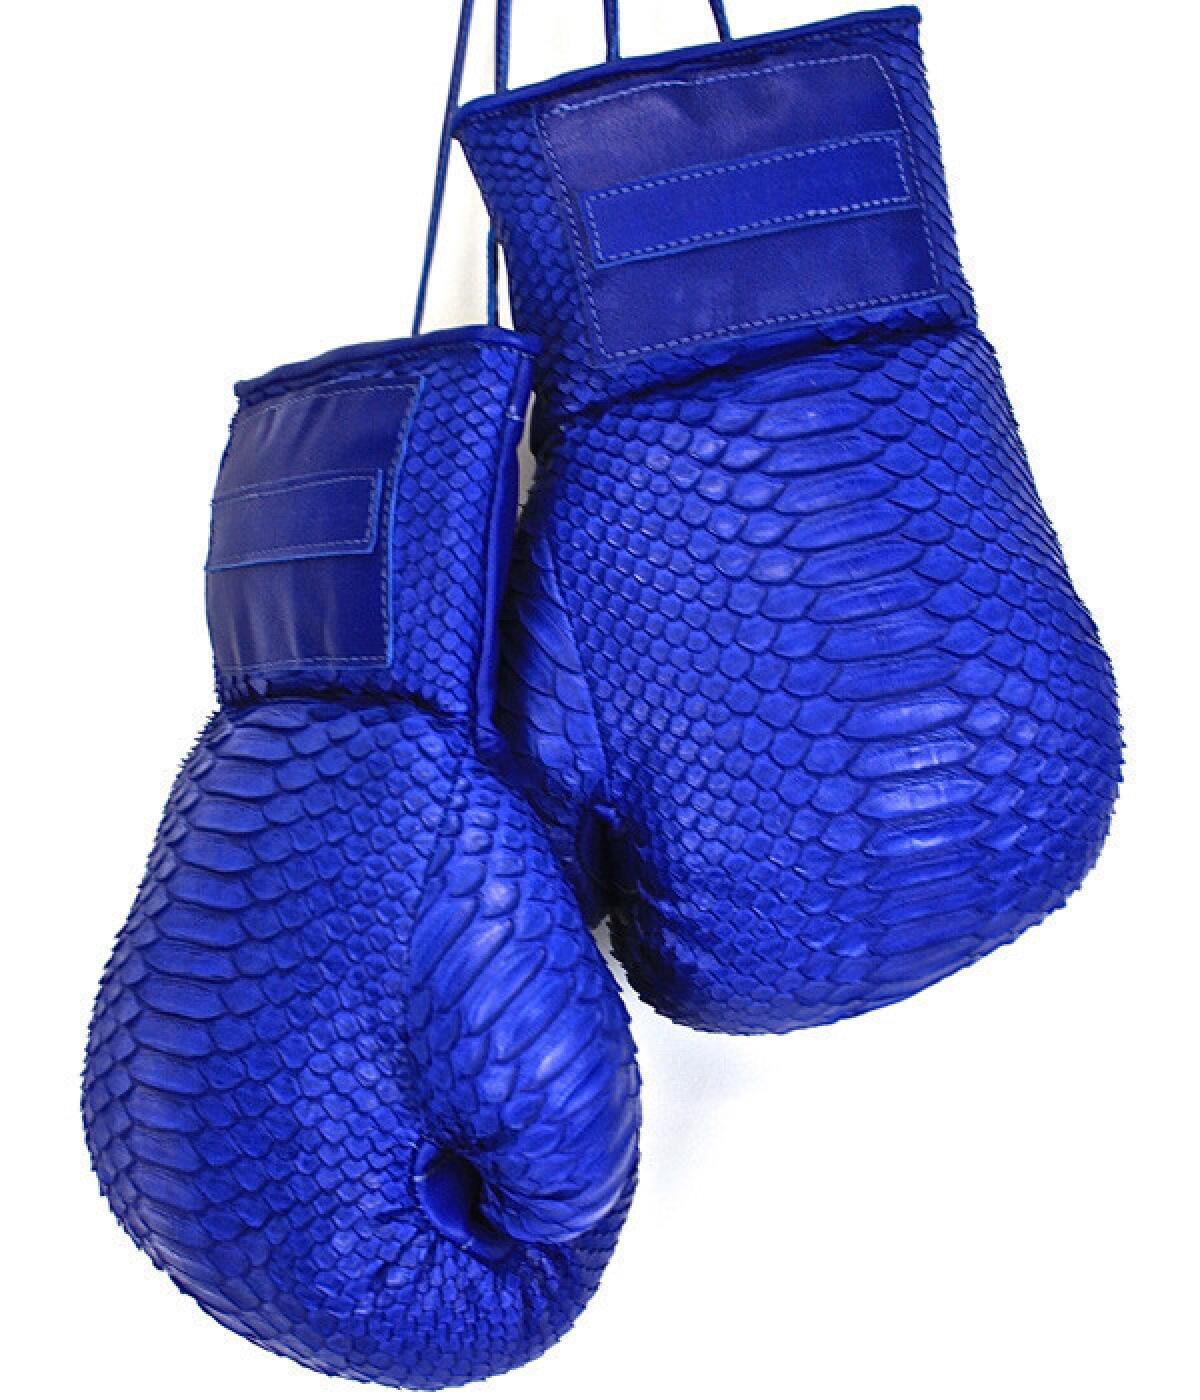 Elisabeth Weinstock painted anaconda boxing gloves.